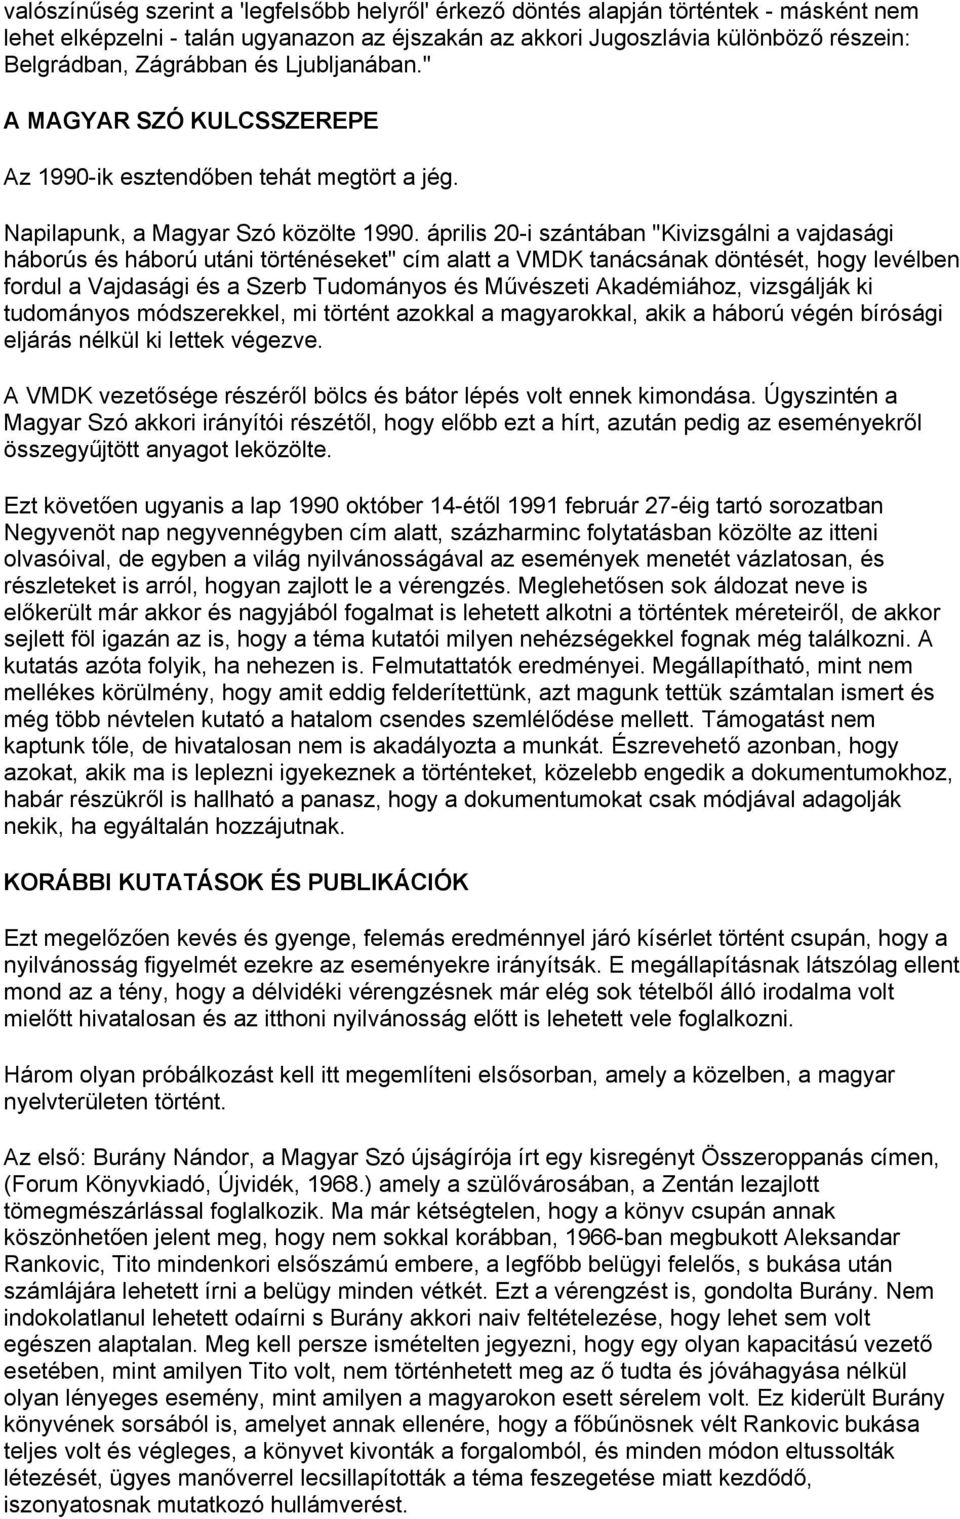 április 20-i szántában "Kivizsgálni a vajdasági háborús és háború utáni történéseket" cím alatt a VMDK tanácsának döntését, hogy levélben fordul a Vajdasági és a Szerb Tudományos és Művészeti